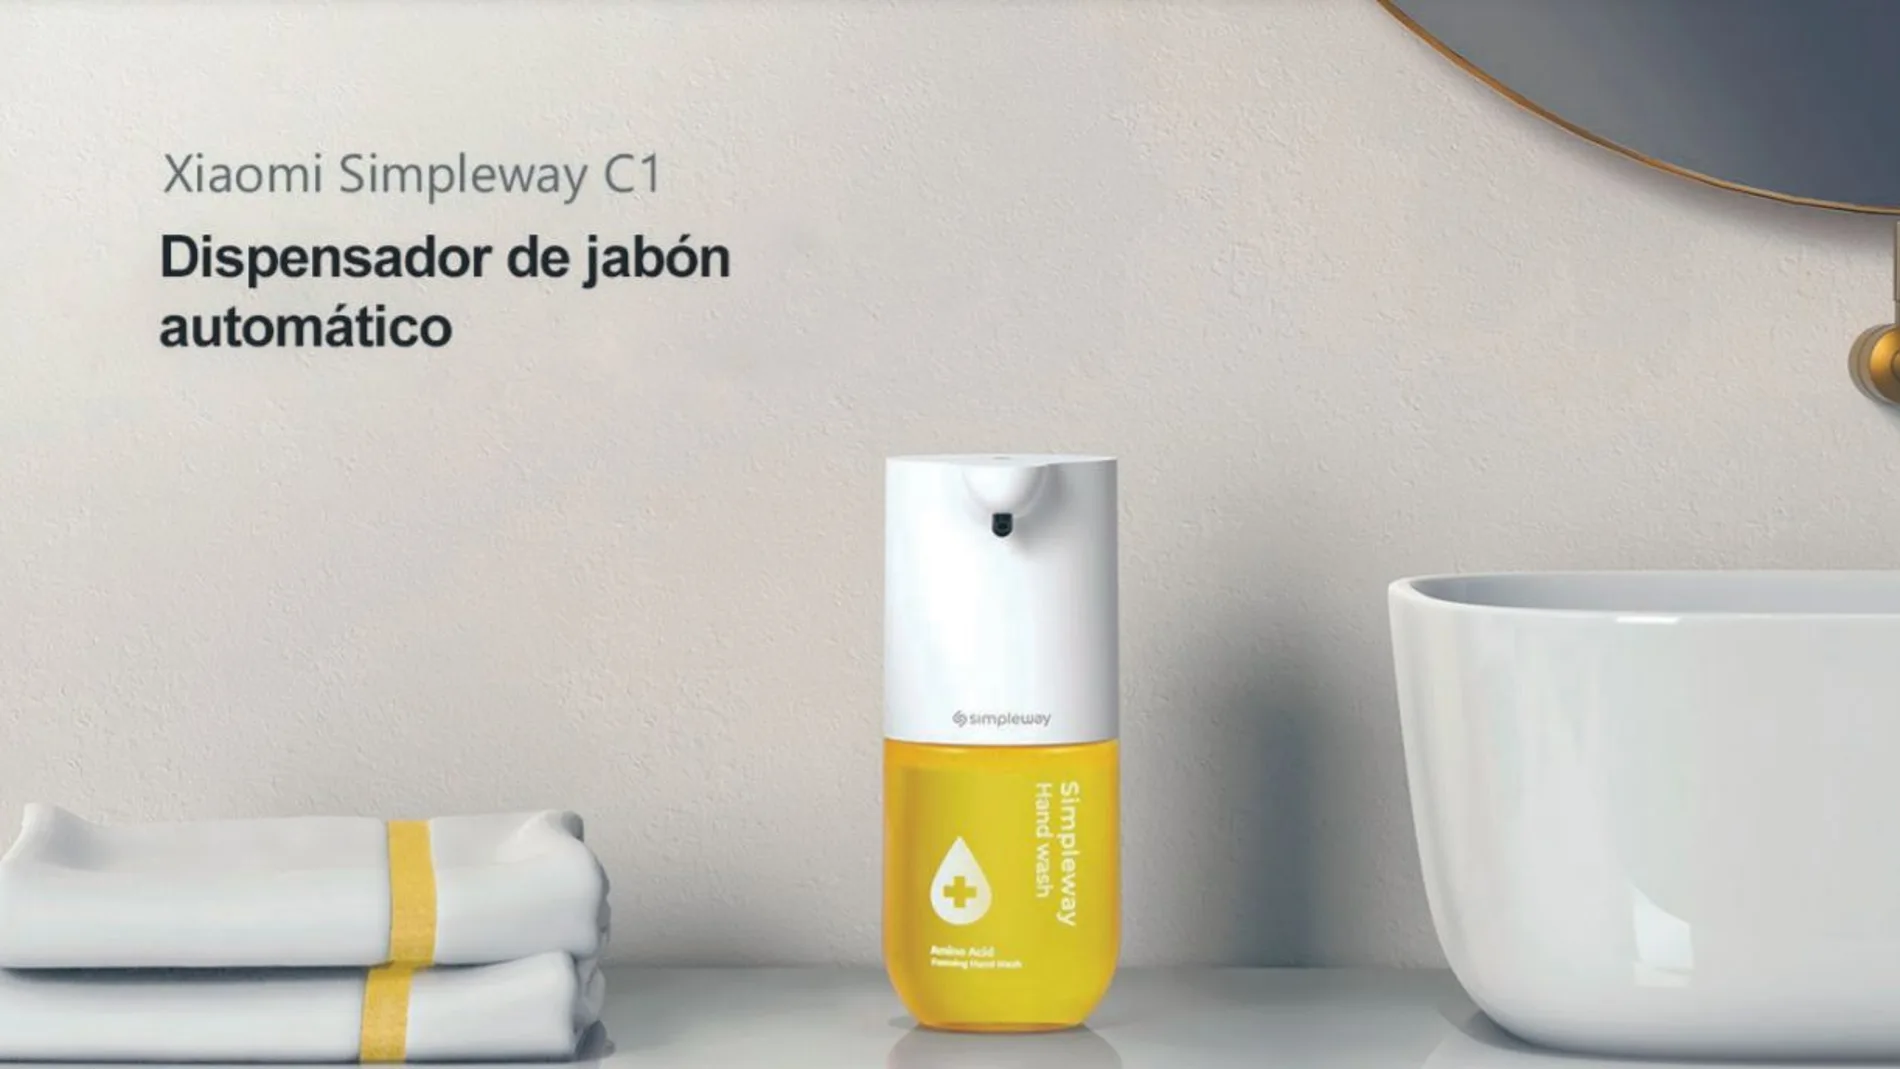 El dispensador de jabón Simpleway C1 utiliza tecnología inteligente evitando el contacto con el dispensador